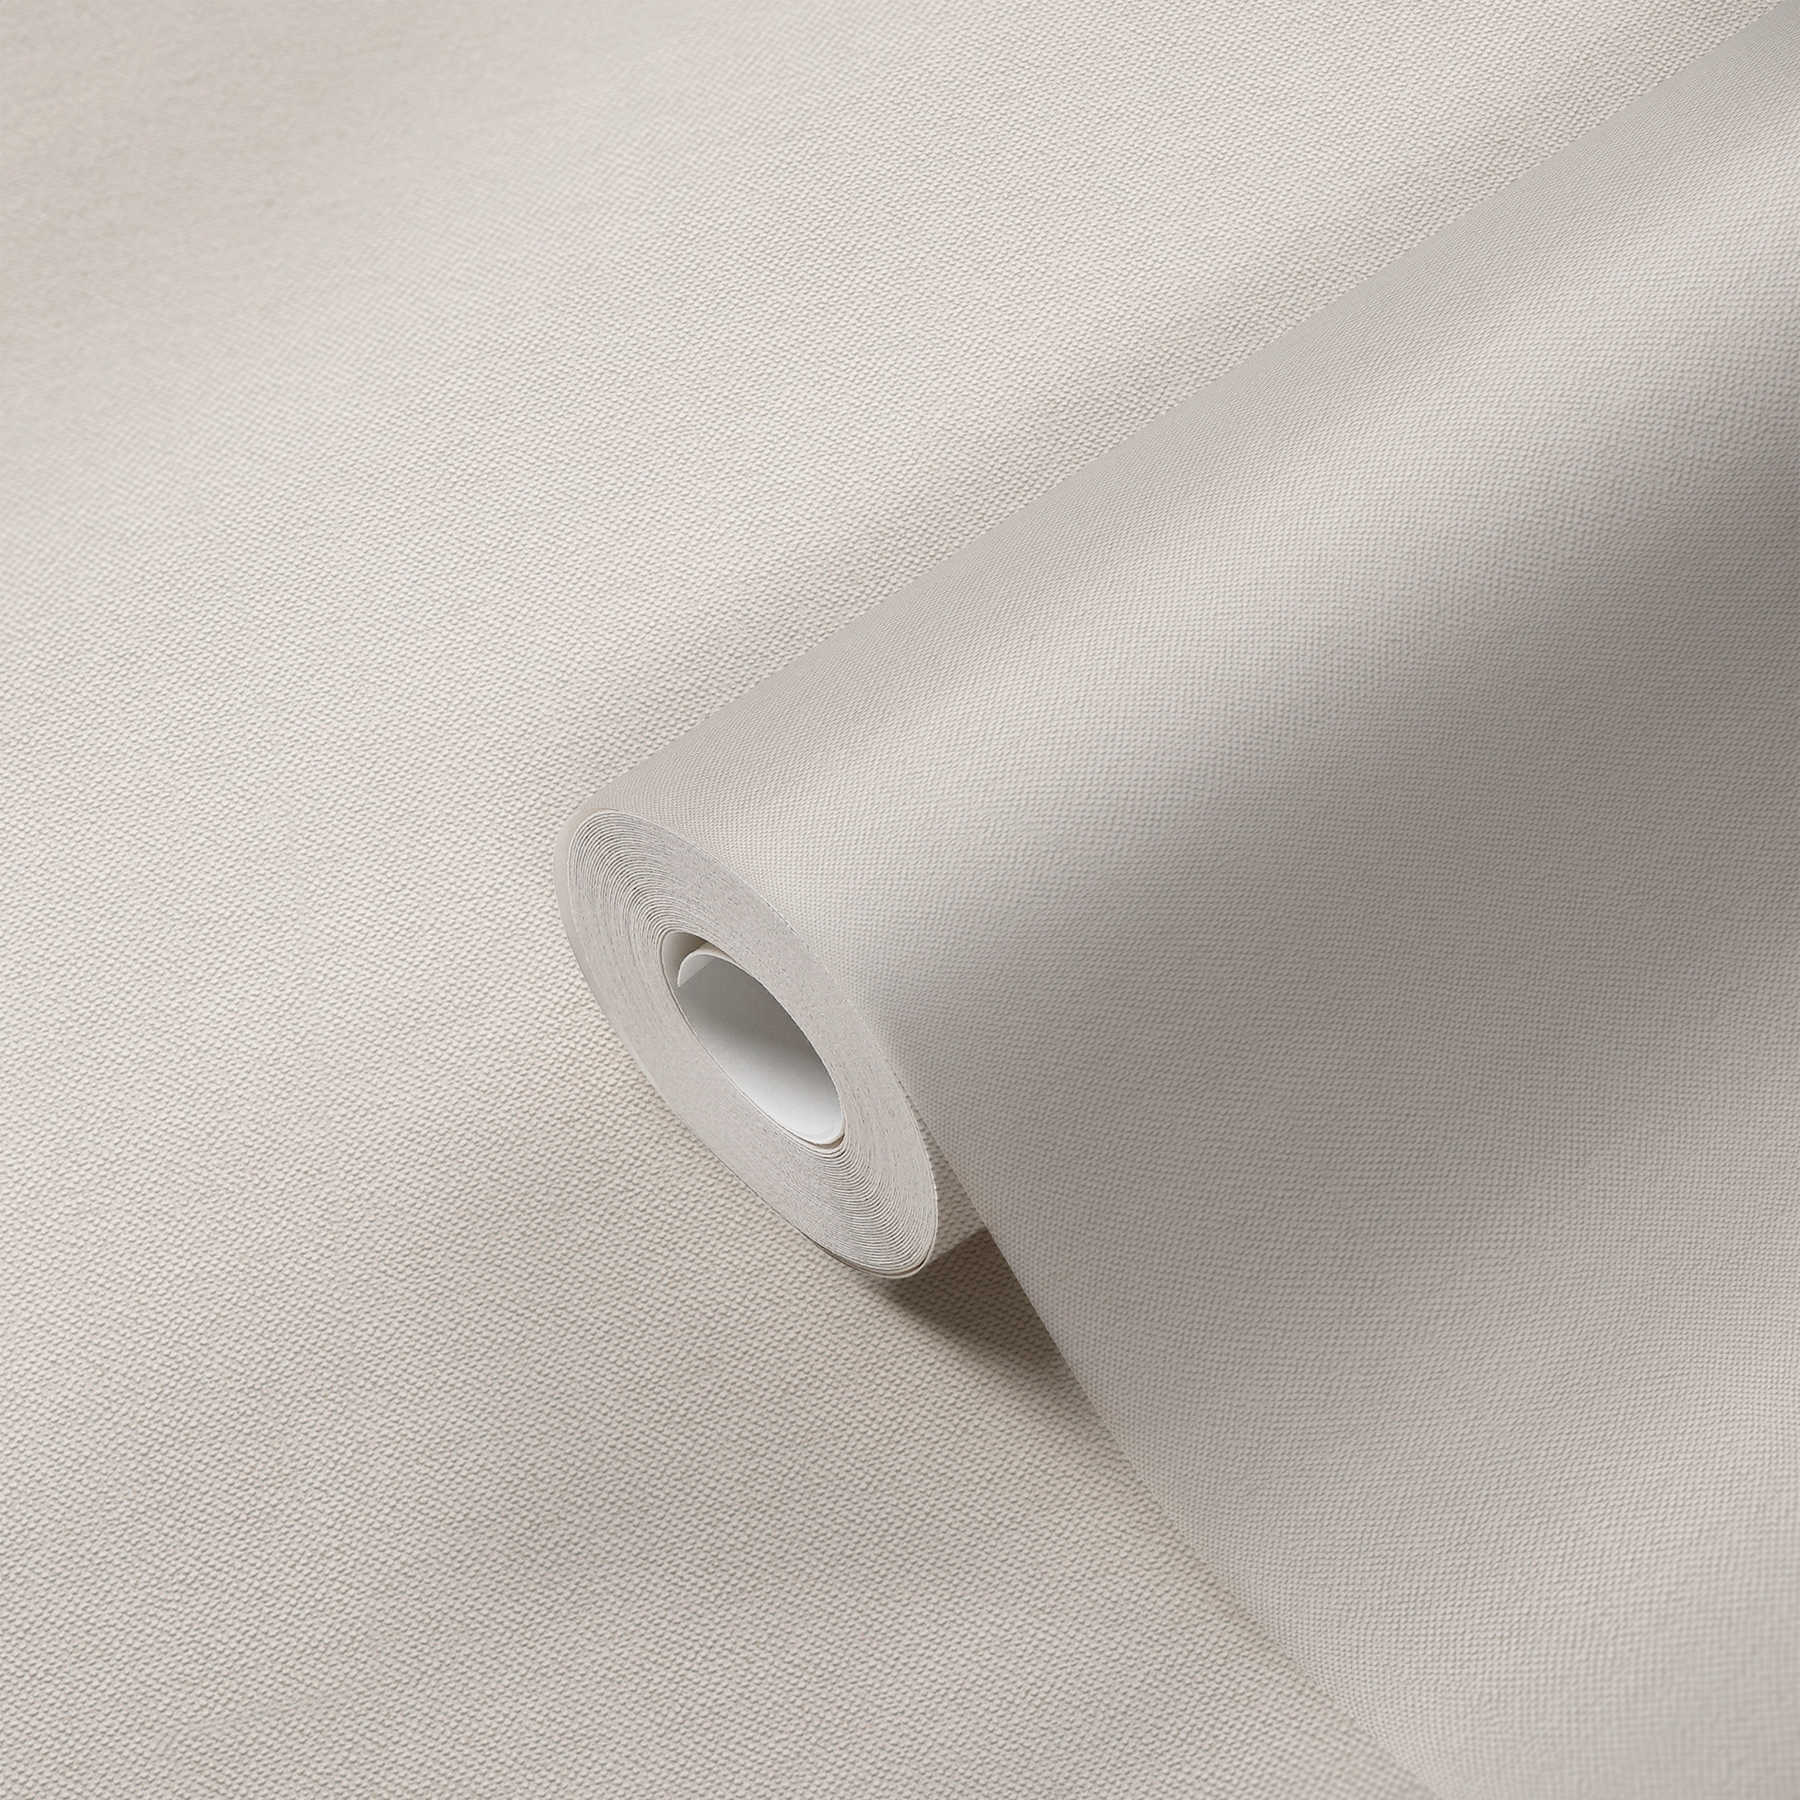             Papel pintado liso de color crema con estructura textil de diseño elegante
        